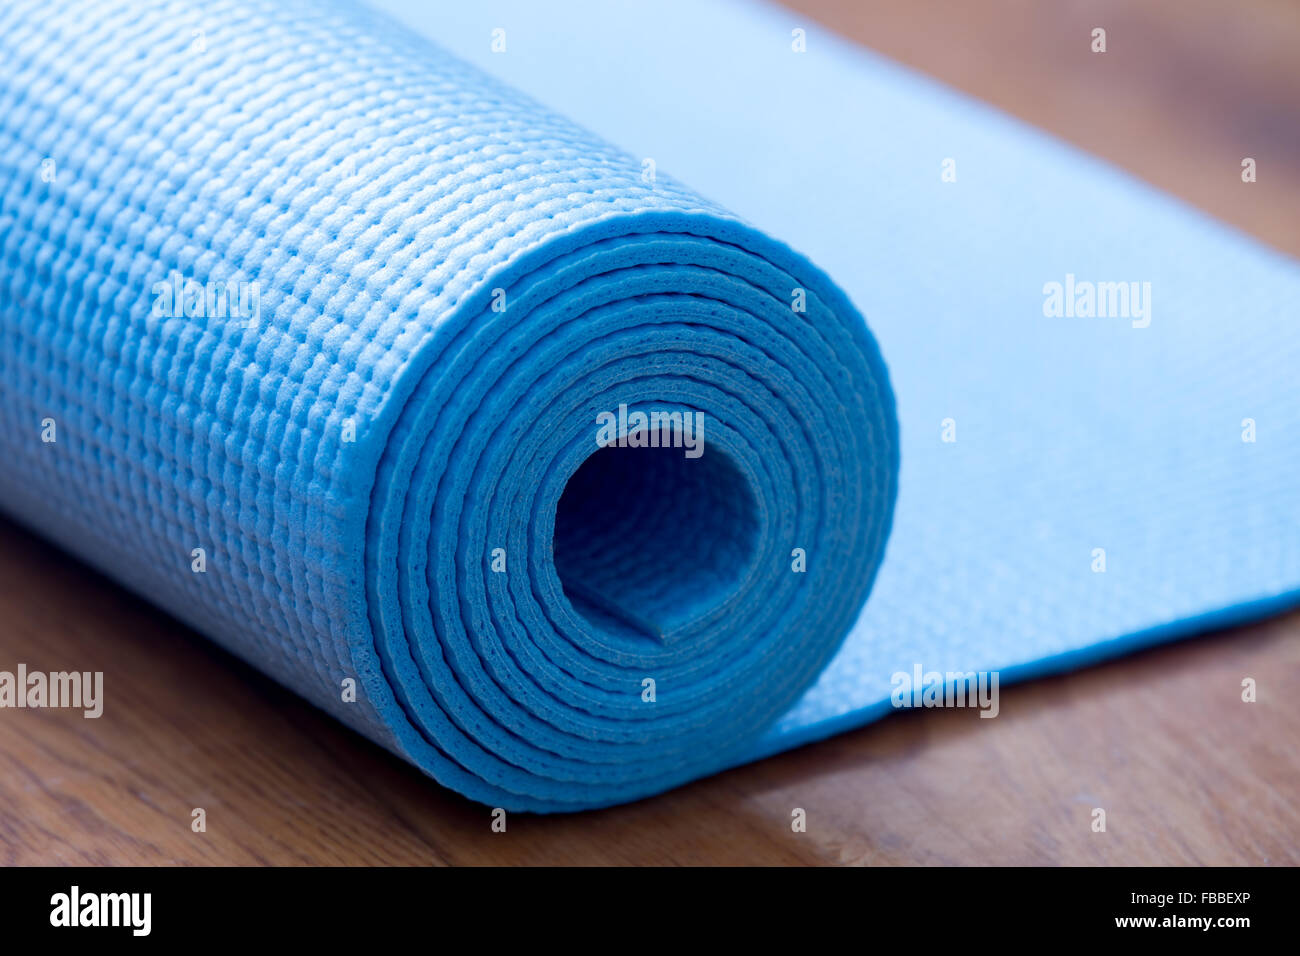 Nahaufnahme des gerollten blauen Yoga, Pilates Matte auf dem Boden. Gesundes Leben, halten Sie sich fit-Konzepte Stockfoto